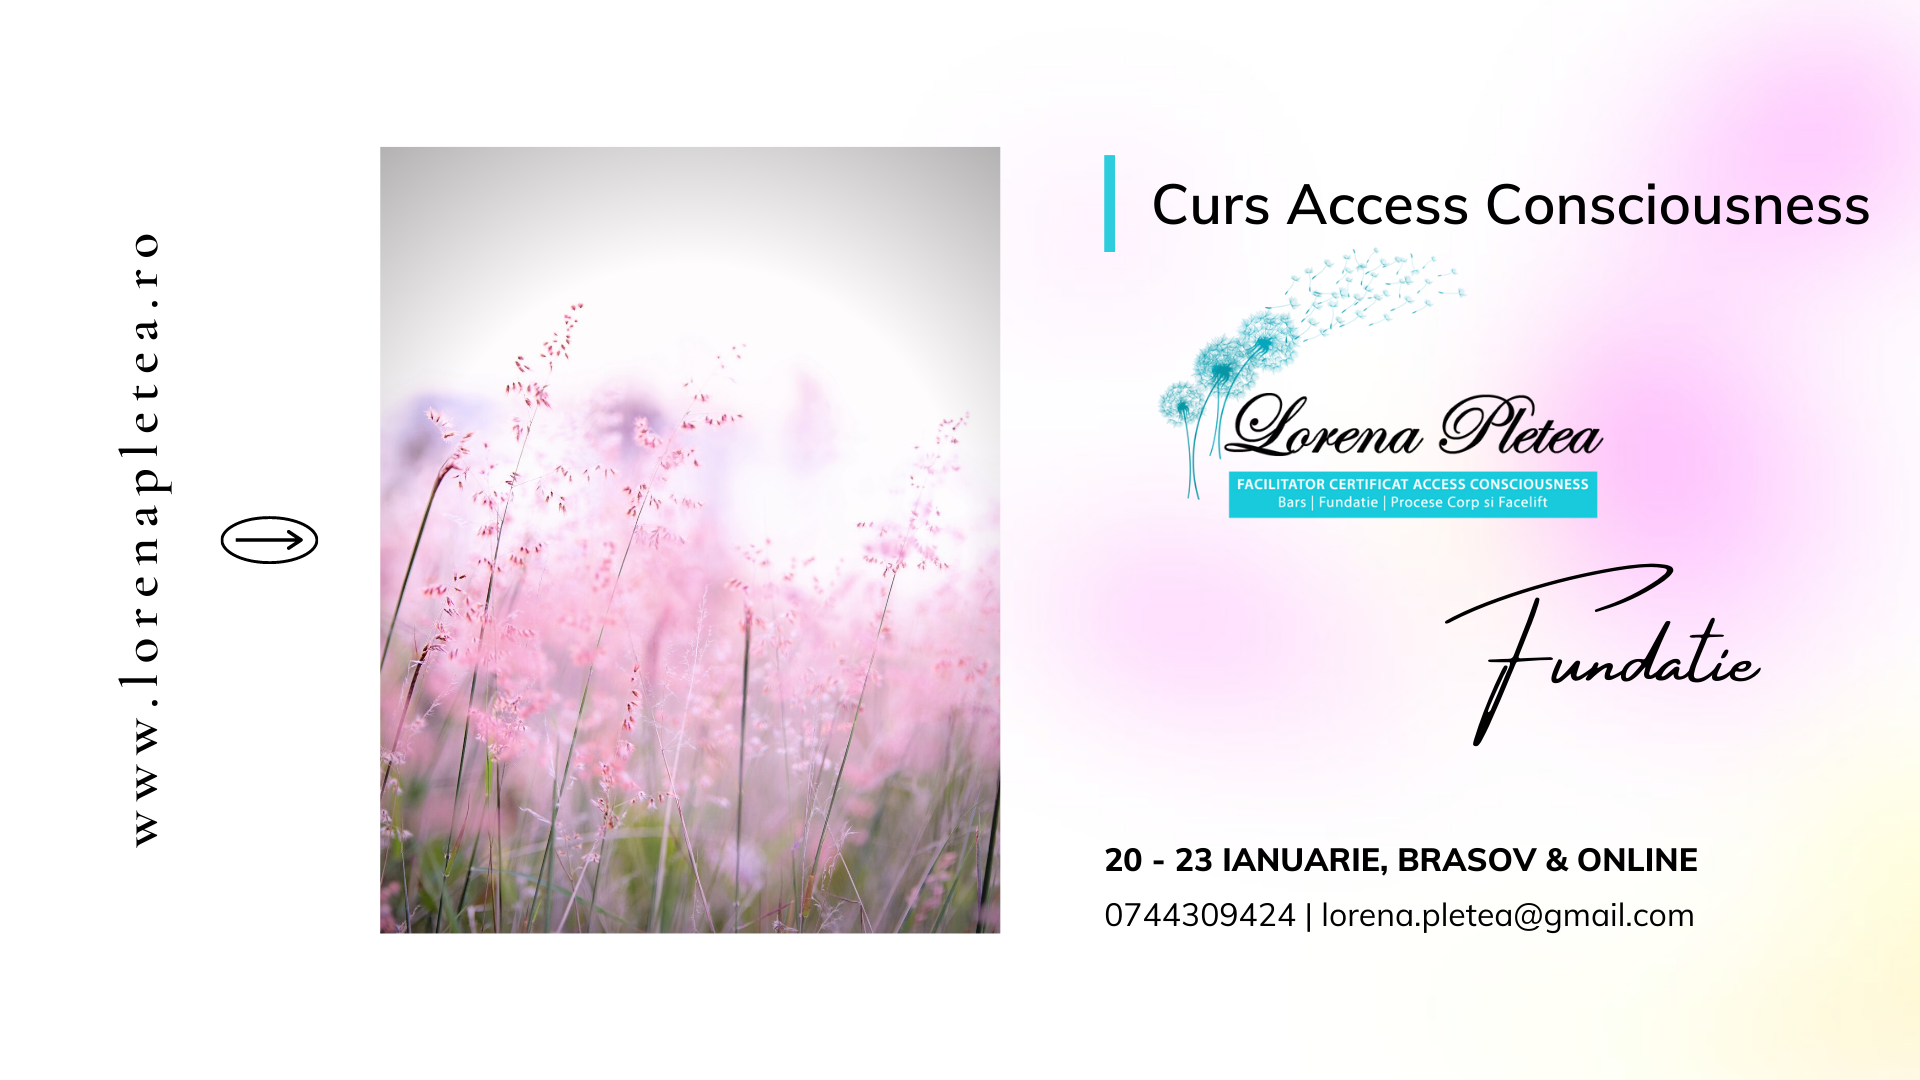 Curs Access Consciousness Fundatia | 20 -23 Ianuarie, Brasov & Online